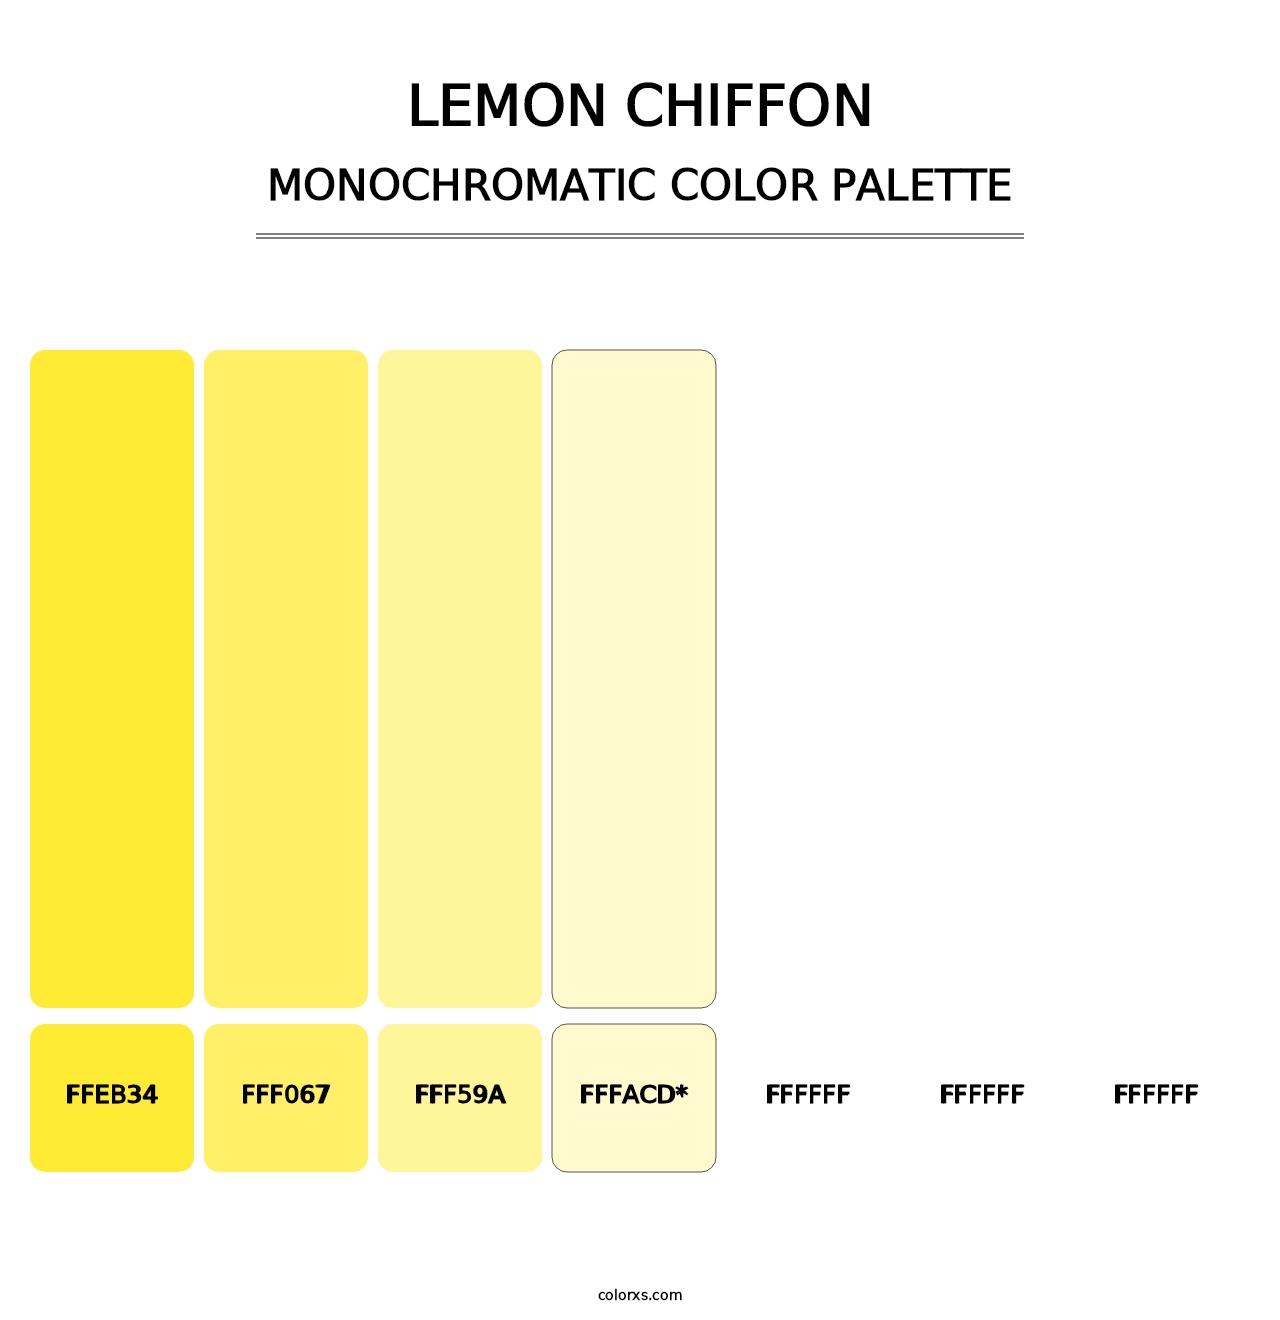 Lemon Chiffon - Monochromatic Color Palette